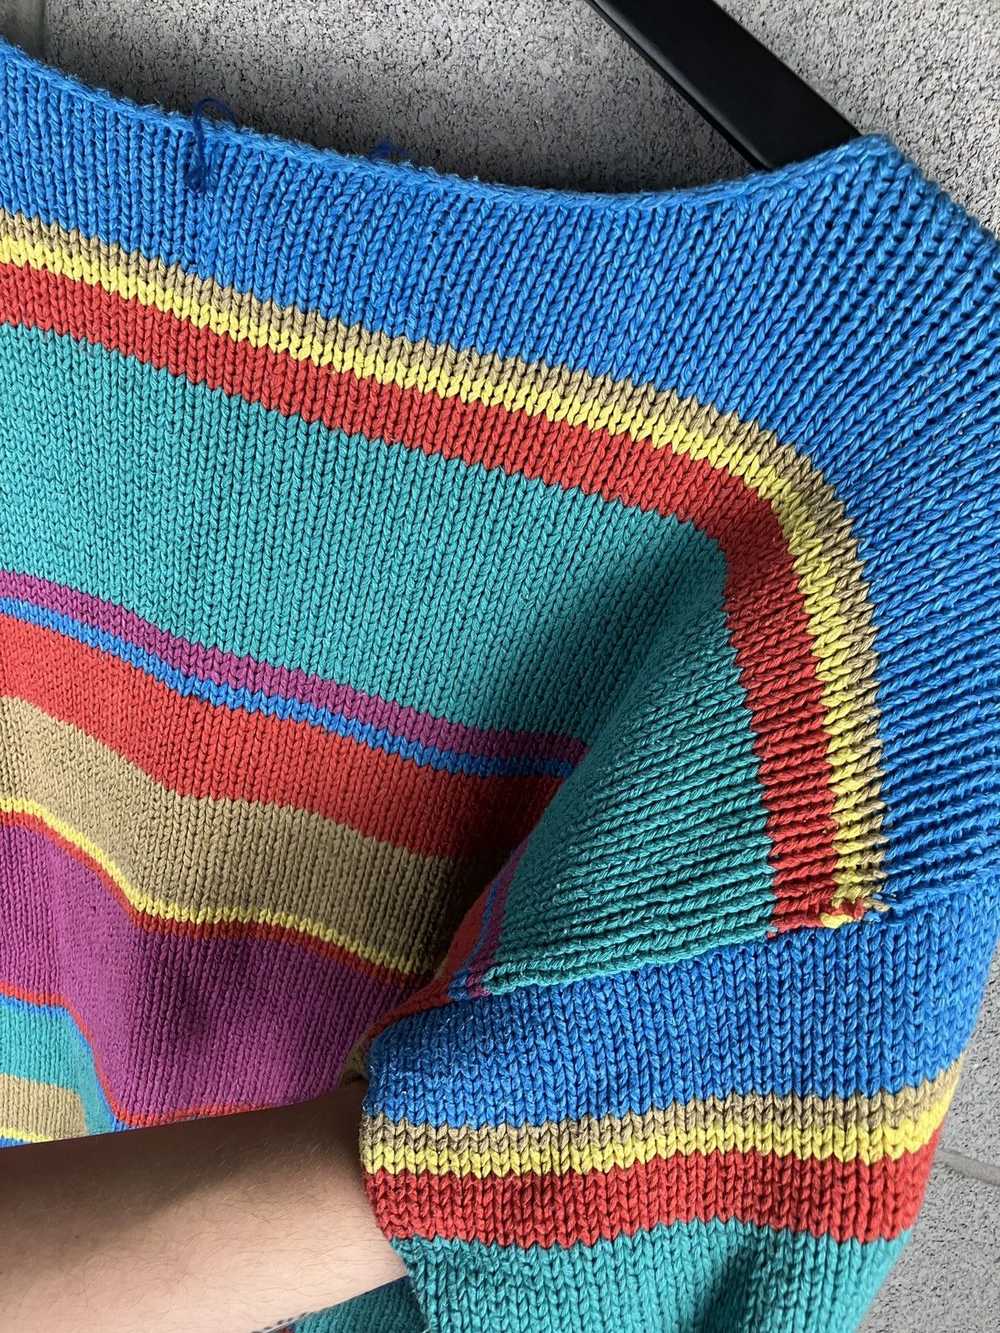 Coloured Cable Knit Sweater × Ralph Lauren × Vint… - image 11